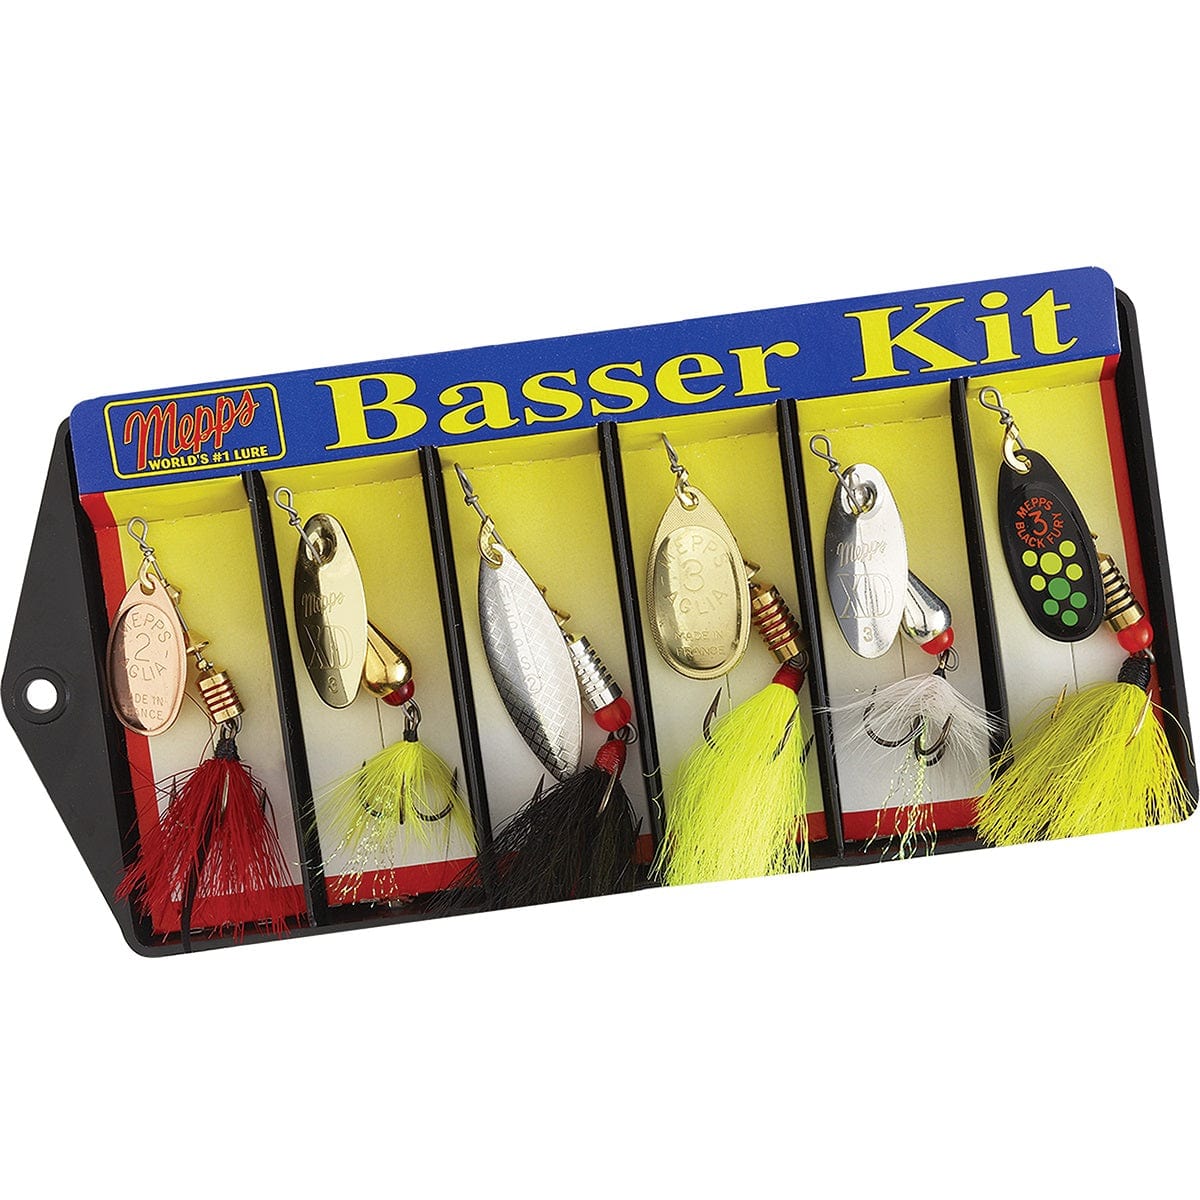 Mepps Mepps Basser Kit 6 Lures Dressed Fishing